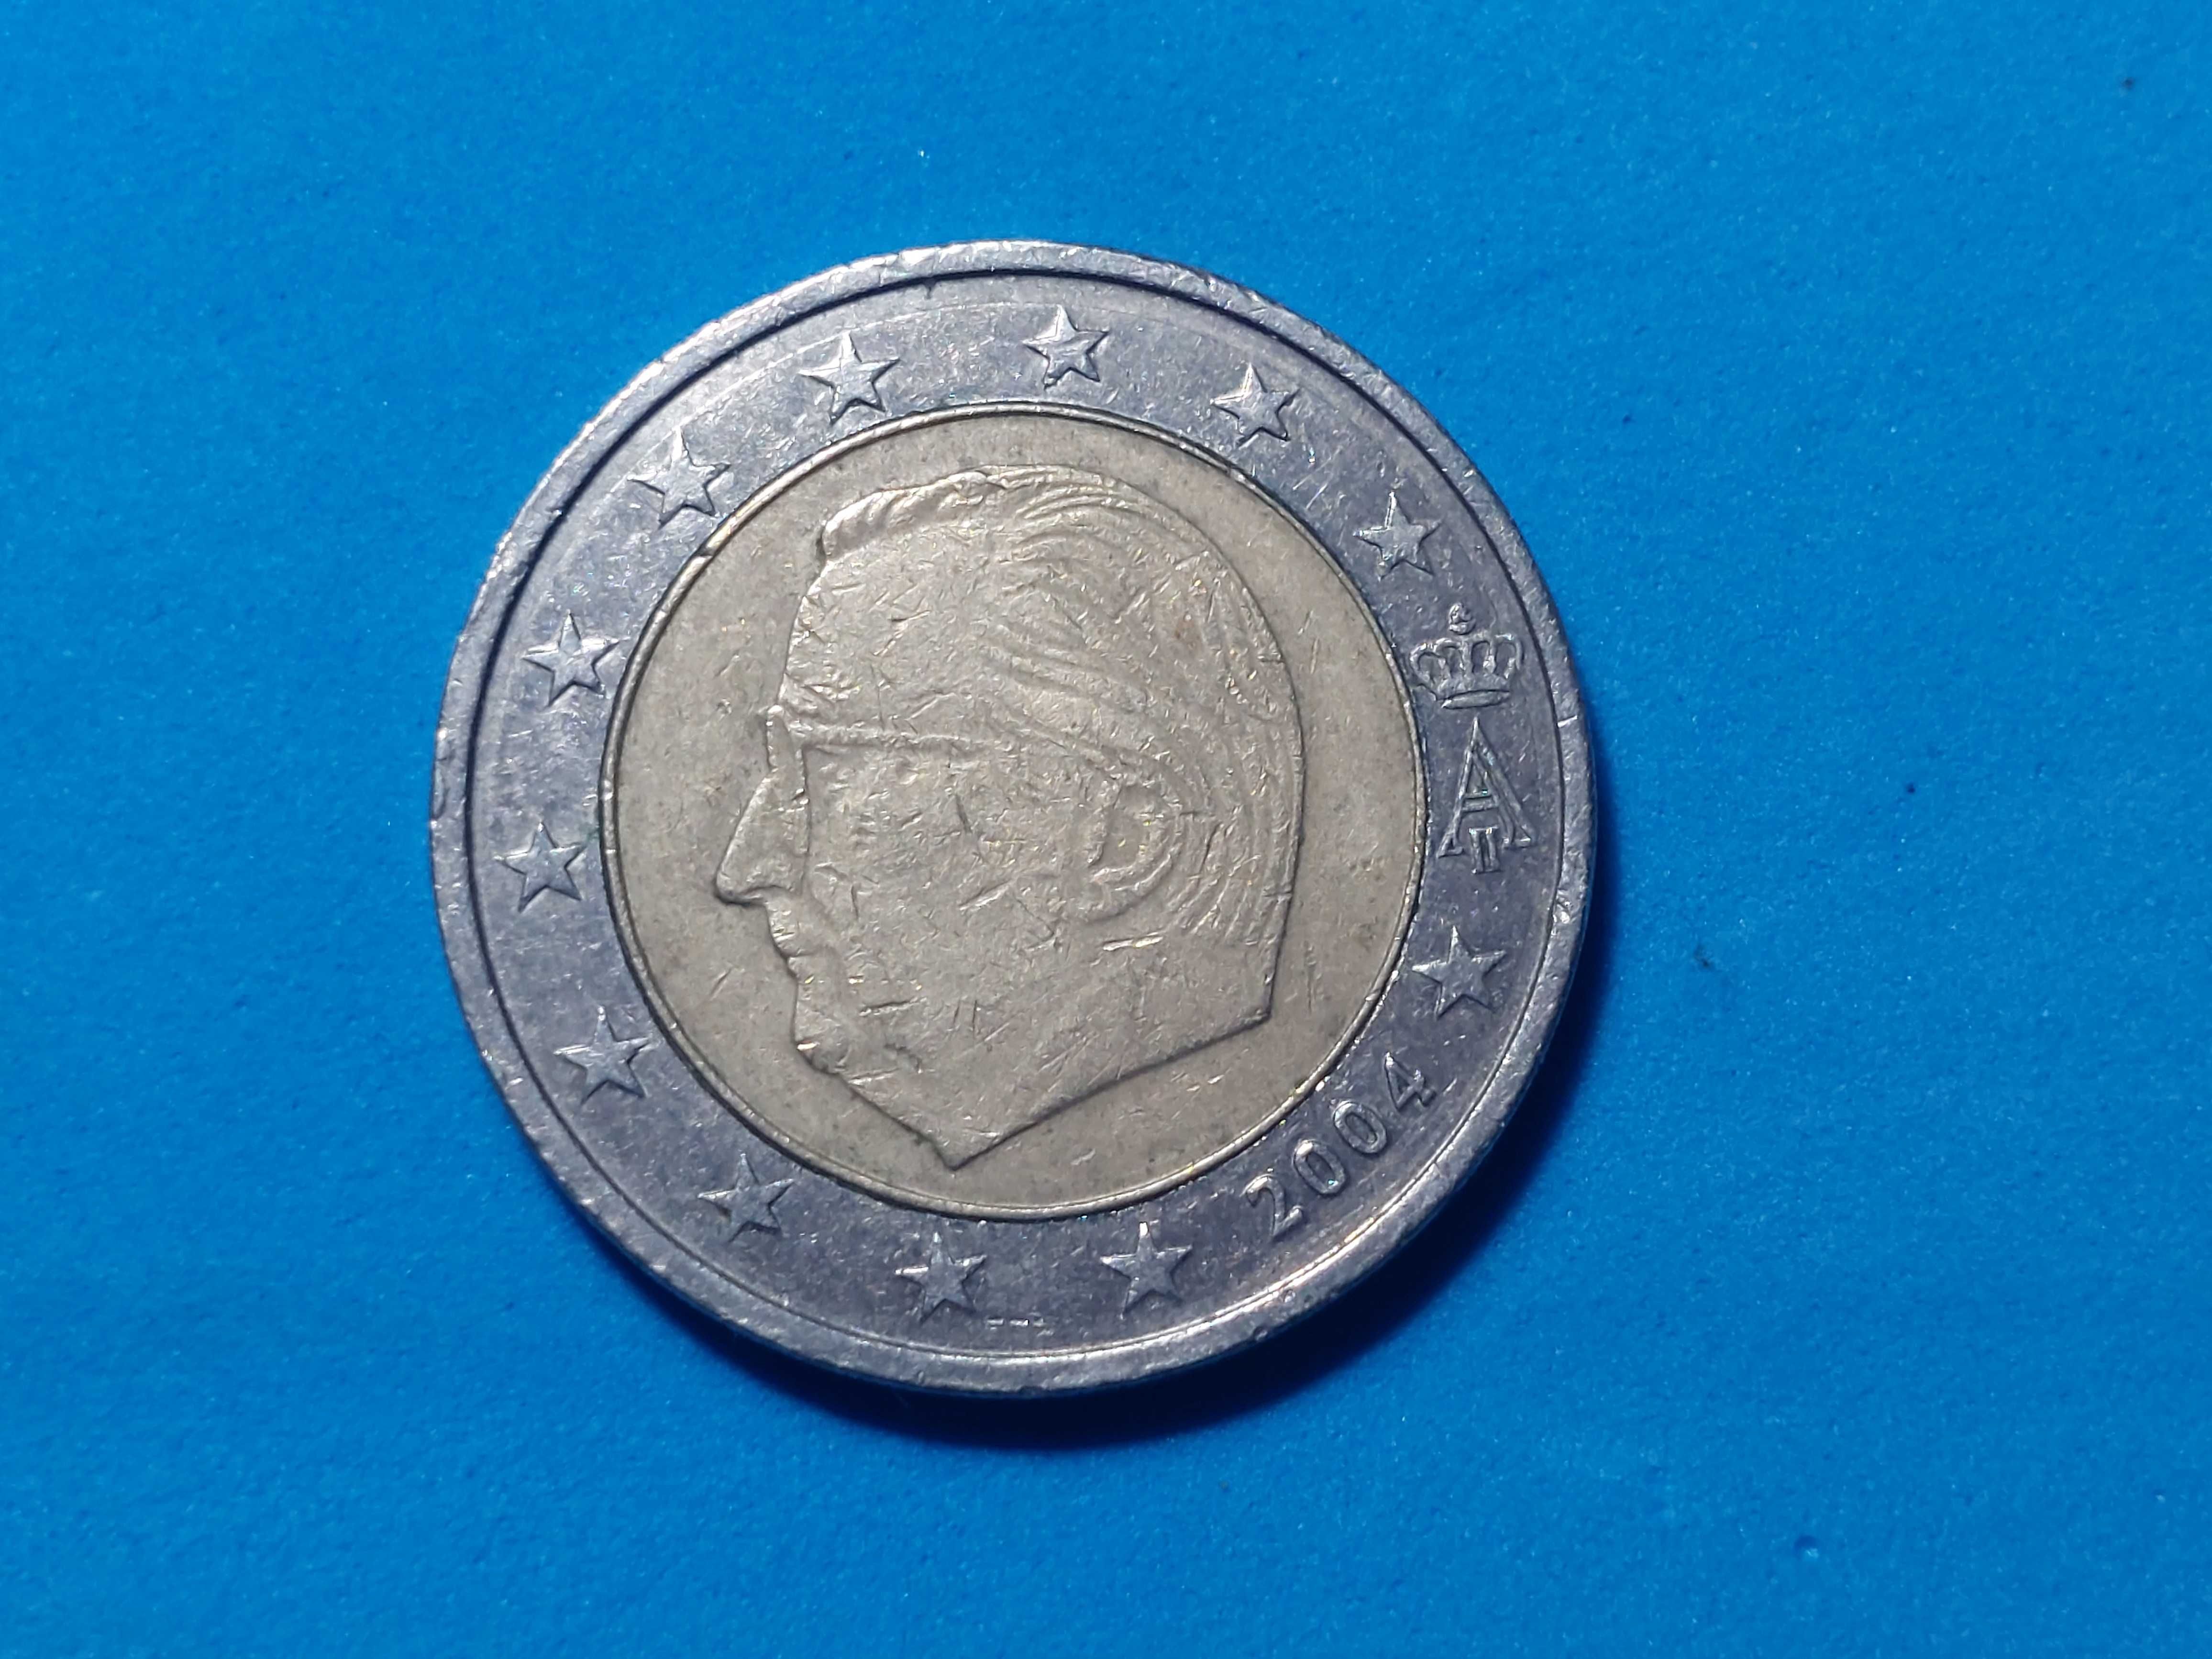 Moeda Bélgica 2 euros ano 2004 com erro de cunhagem no mapa